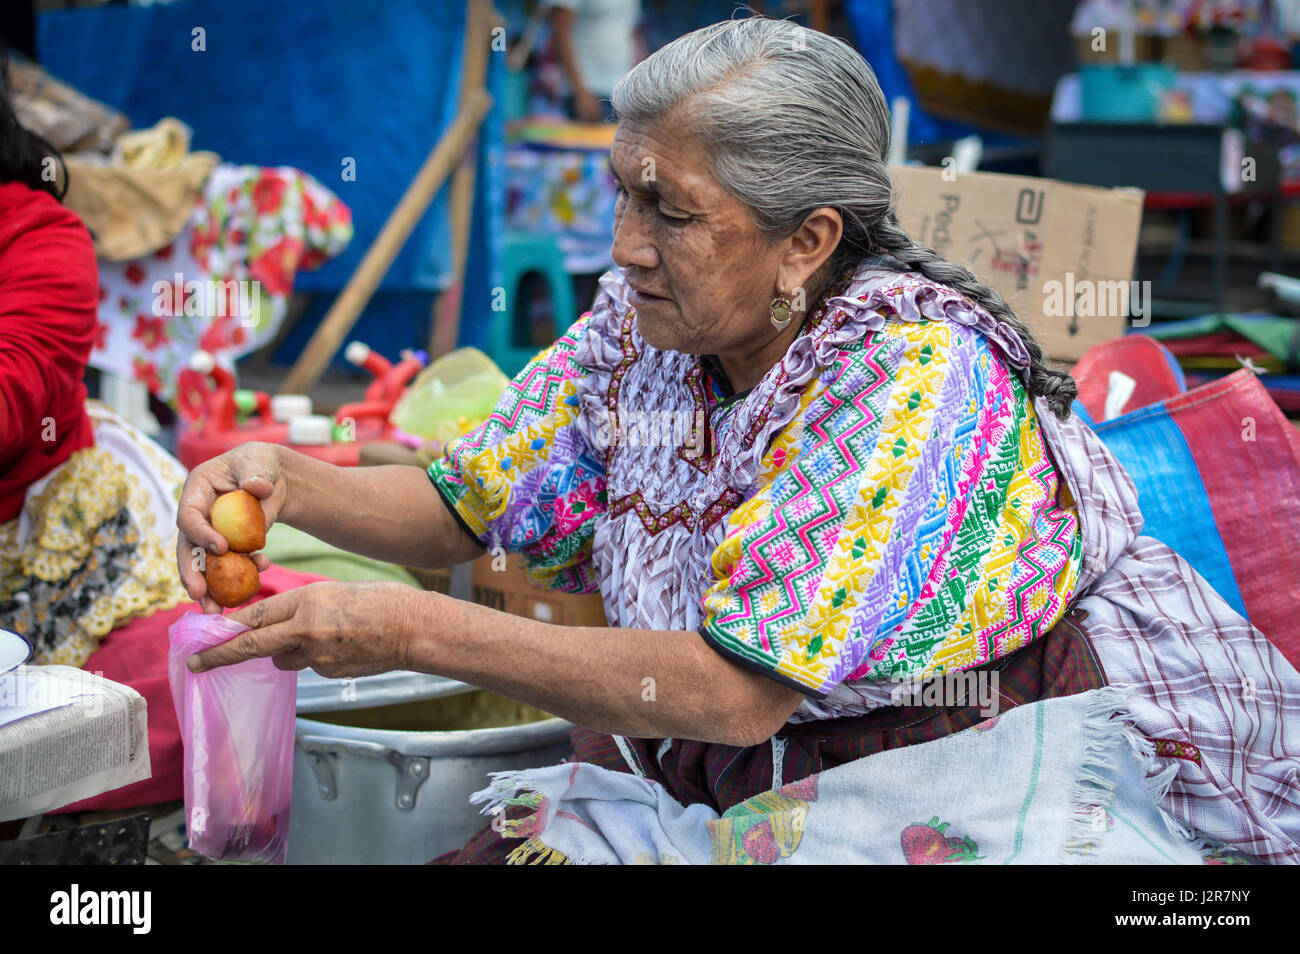 Quetzaltenango, Guatemala - Februar 8, 2015: Maya Frau verkauft süsse Frittierte bunuelos an einem lokalen Lebensmittelmarkt in Xela, Guatemala Stockfoto